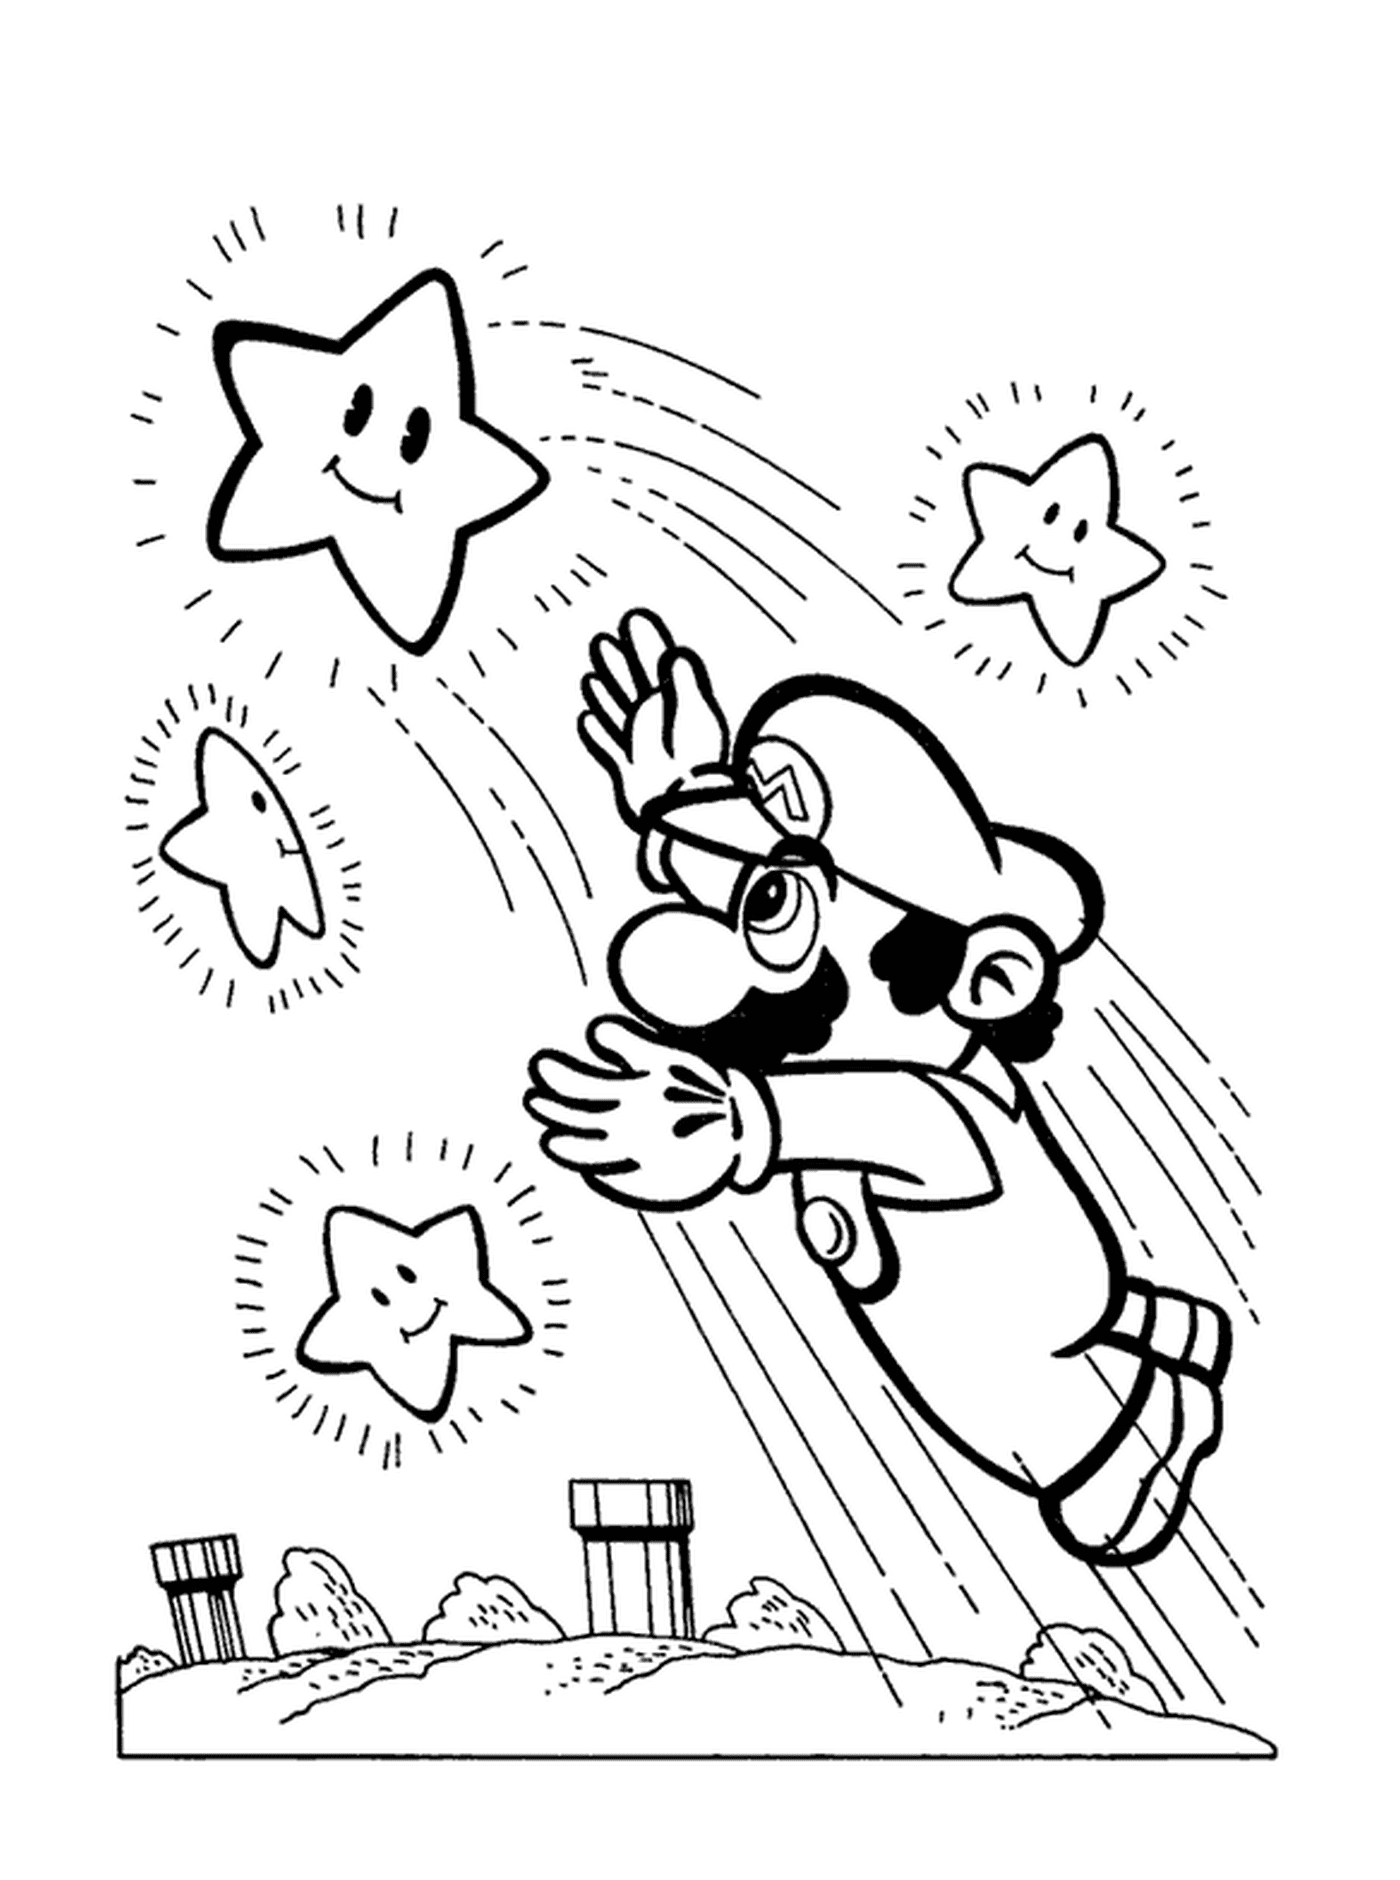 Mario attrape une etoile